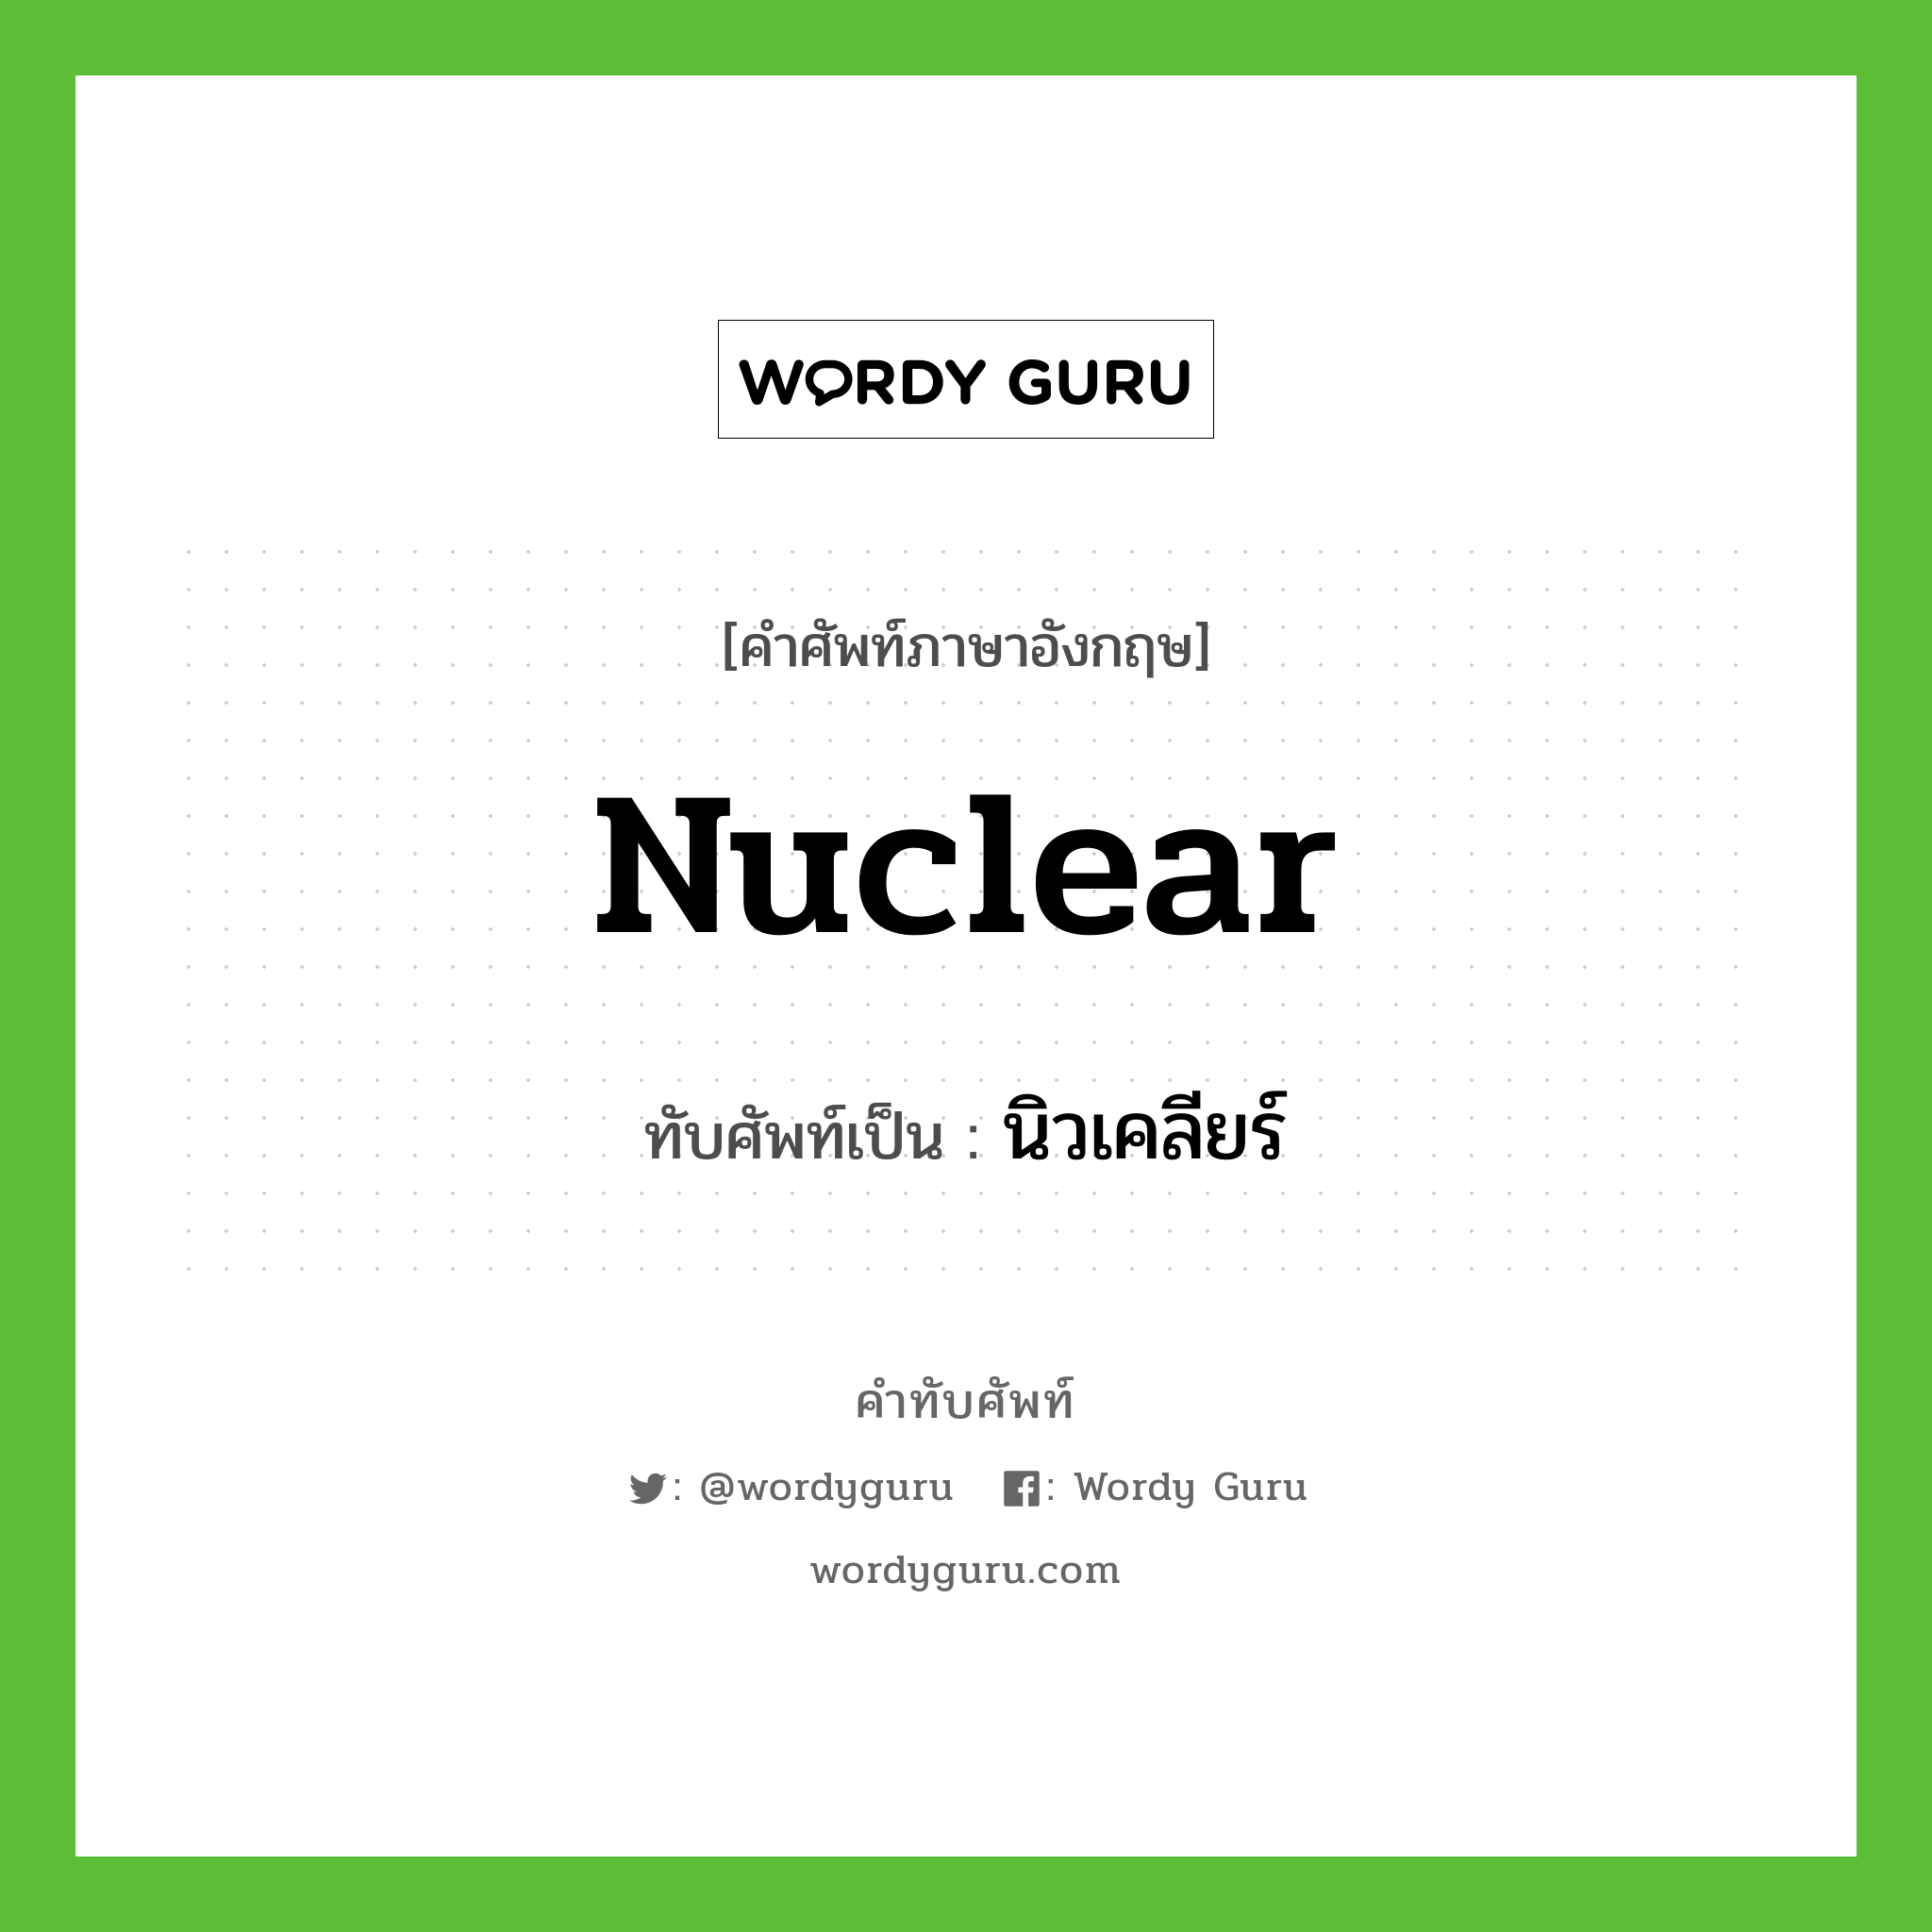 นิวเคลียร์ เขียนอย่างไร?, คำศัพท์ภาษาอังกฤษ นิวเคลียร์ ทับศัพท์เป็น nuclear